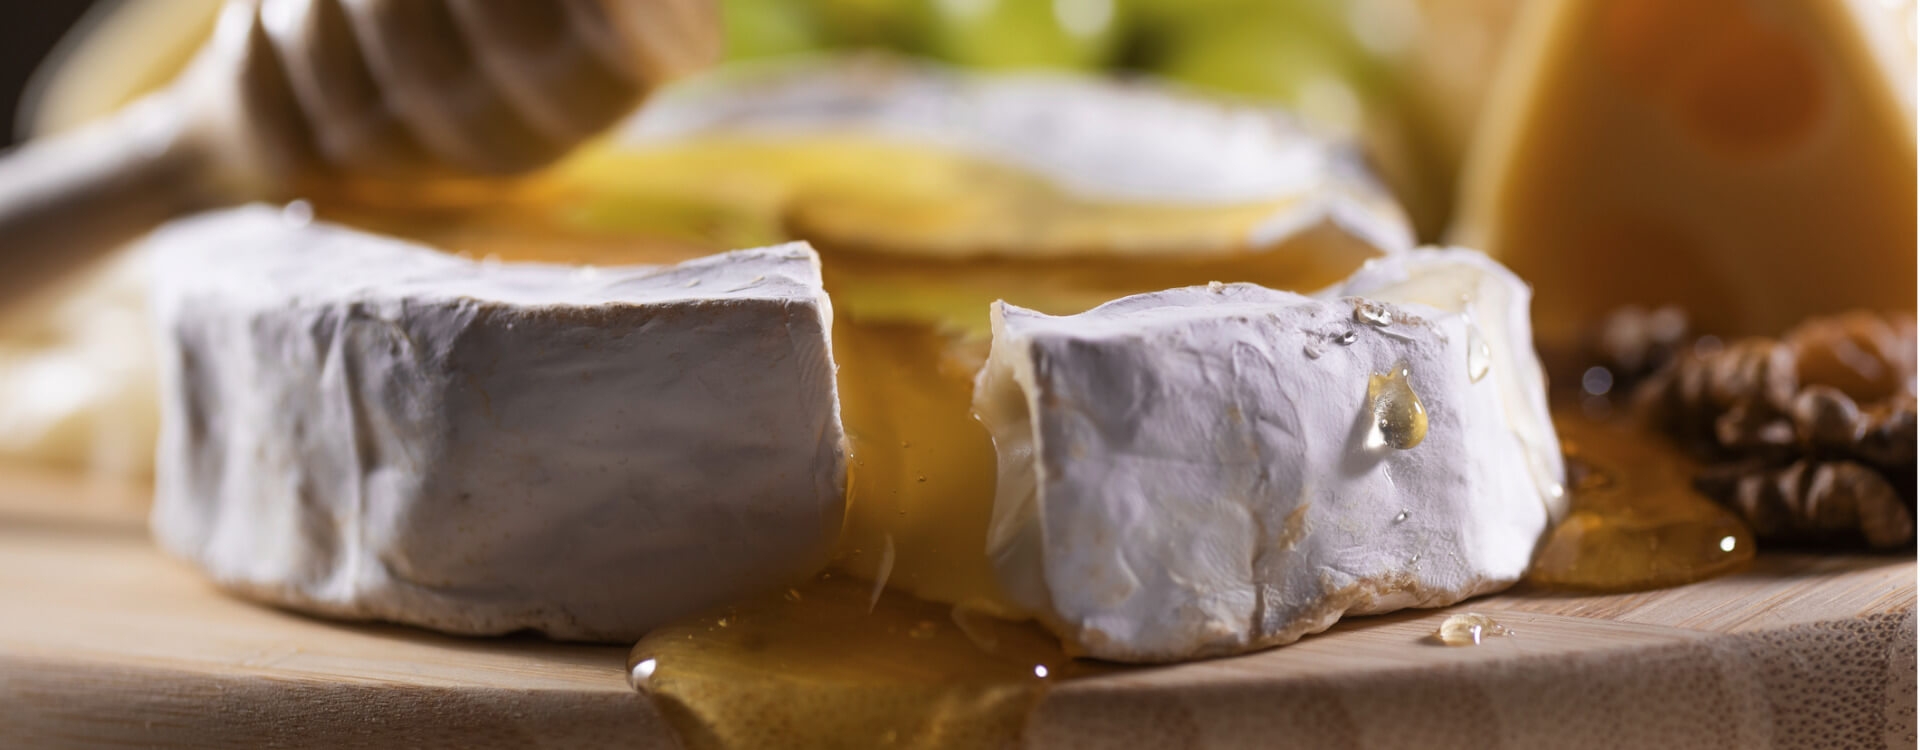 Italian honey and cheeses: tasty pairings